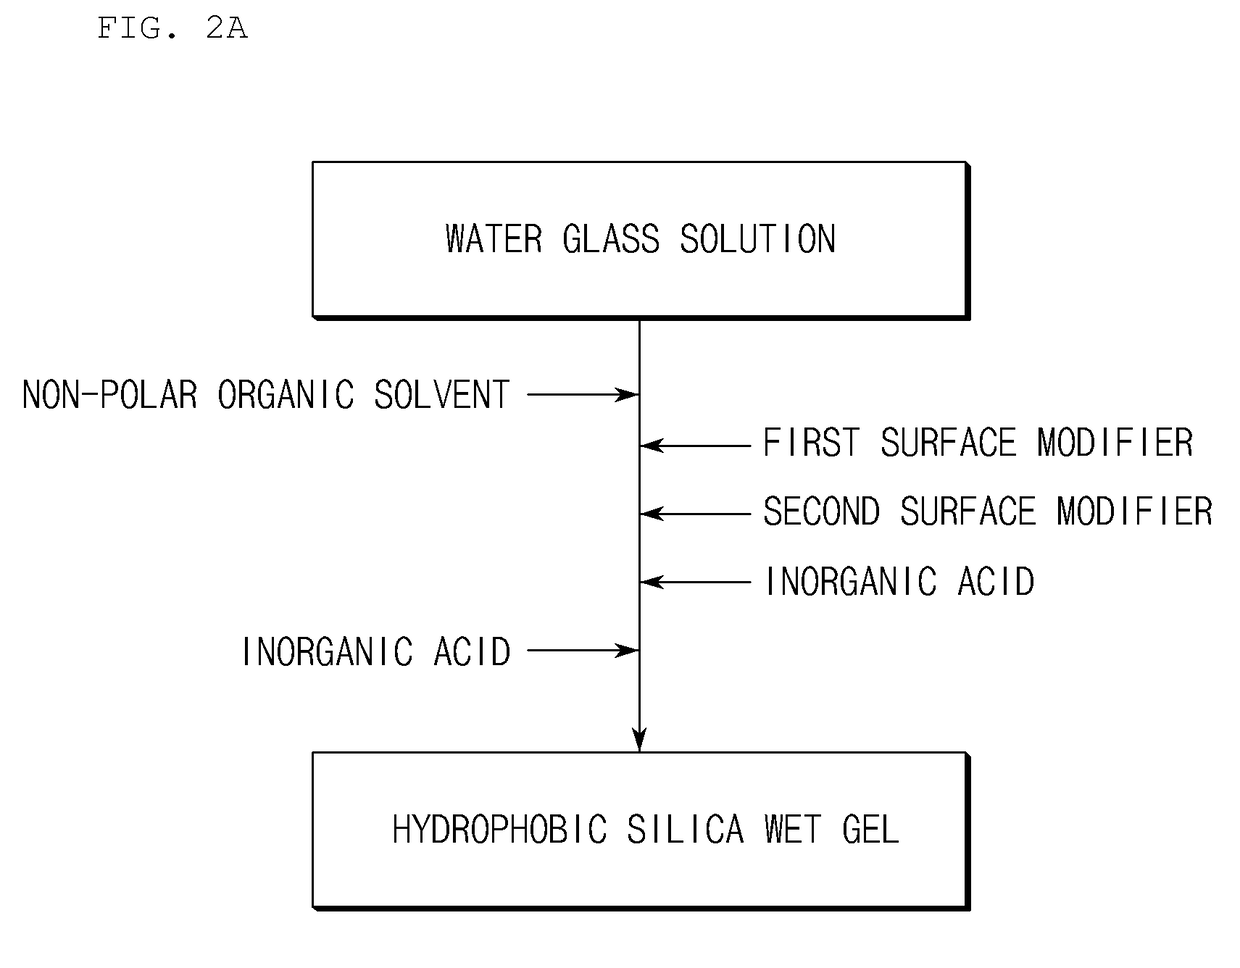 Method for preparing hydrophobic silica aerogel